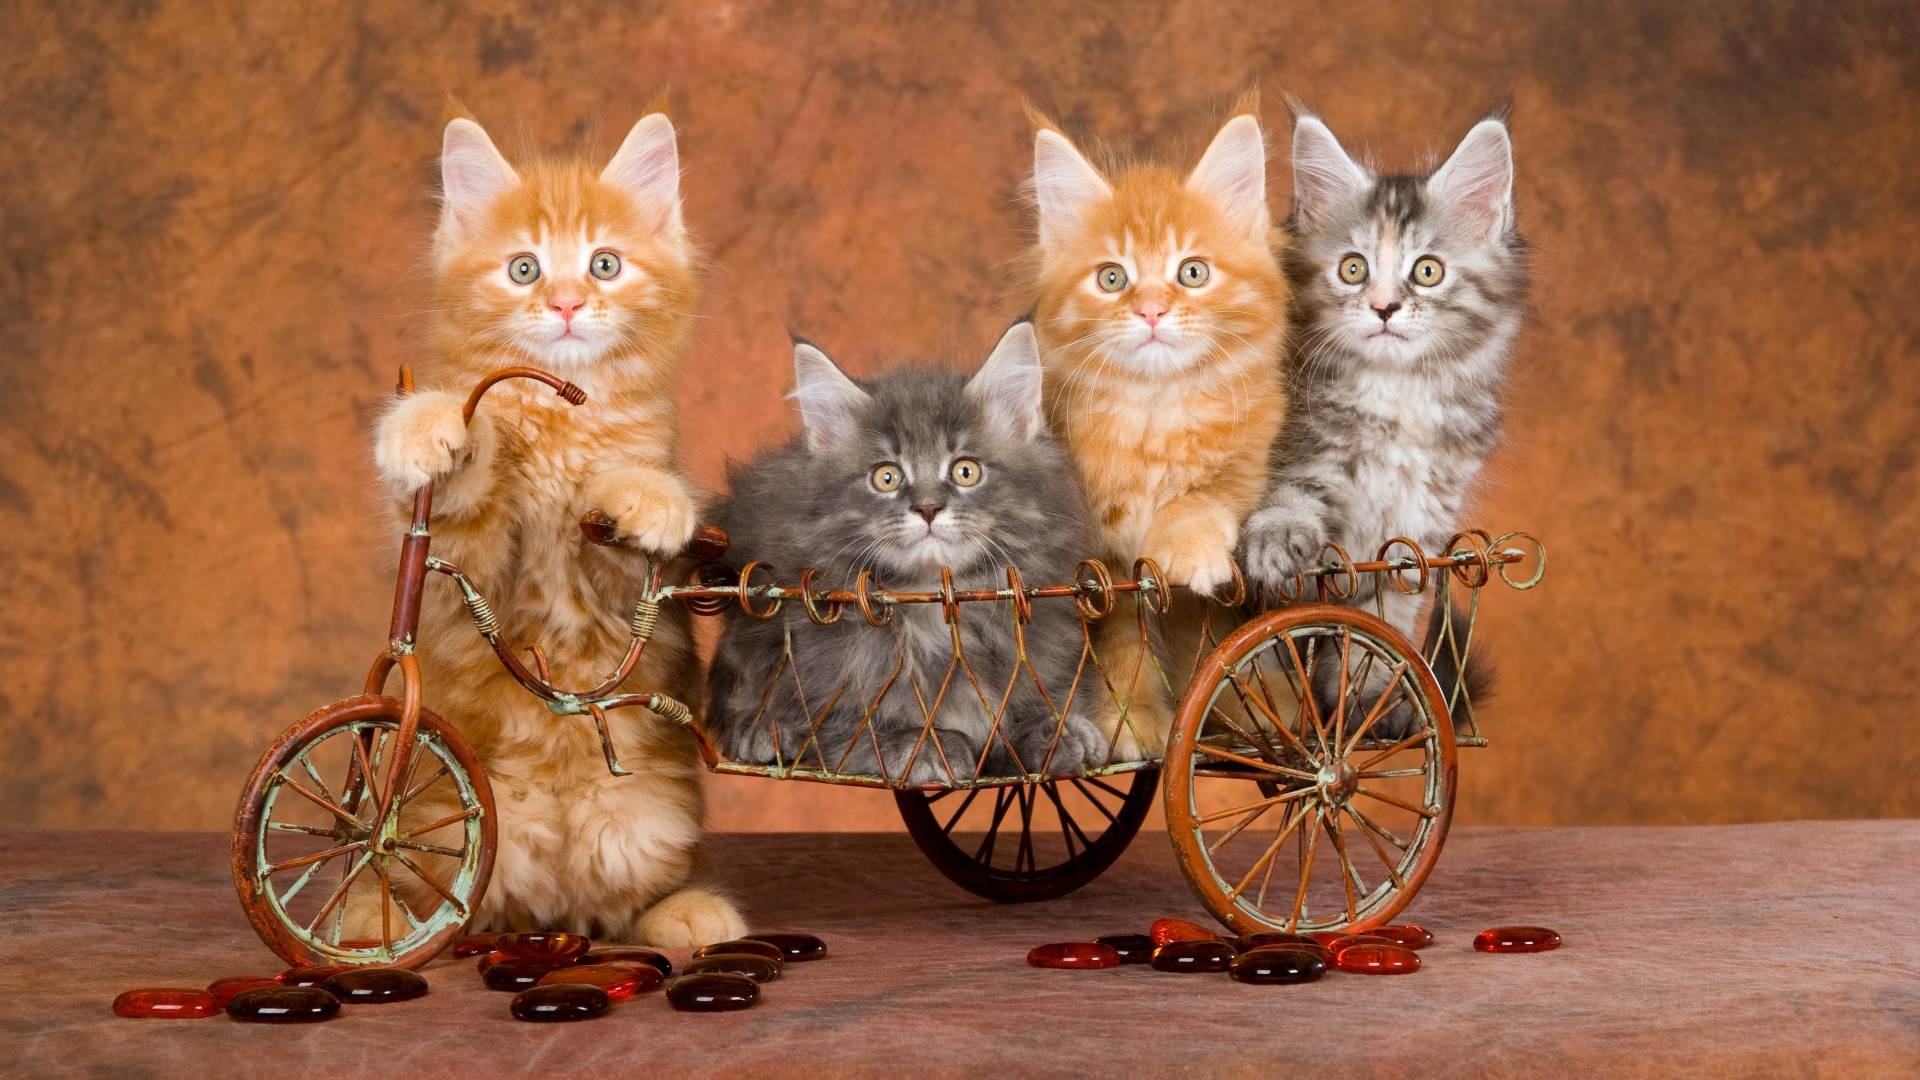 Забавные котята породы мейн кун в игрушечном велосипеде 